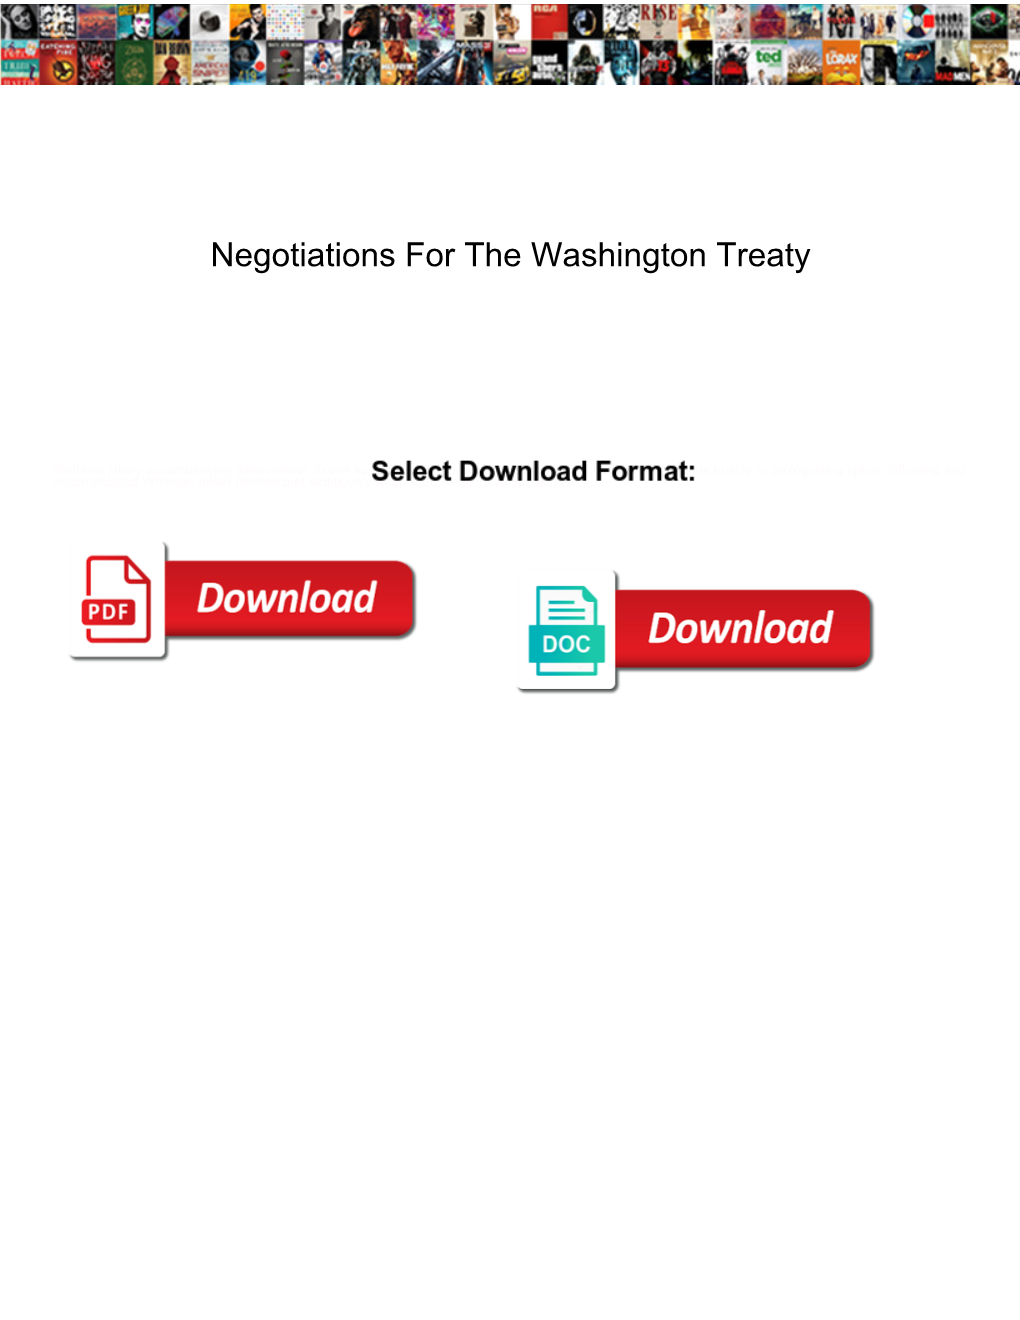 Negotiations for the Washington Treaty